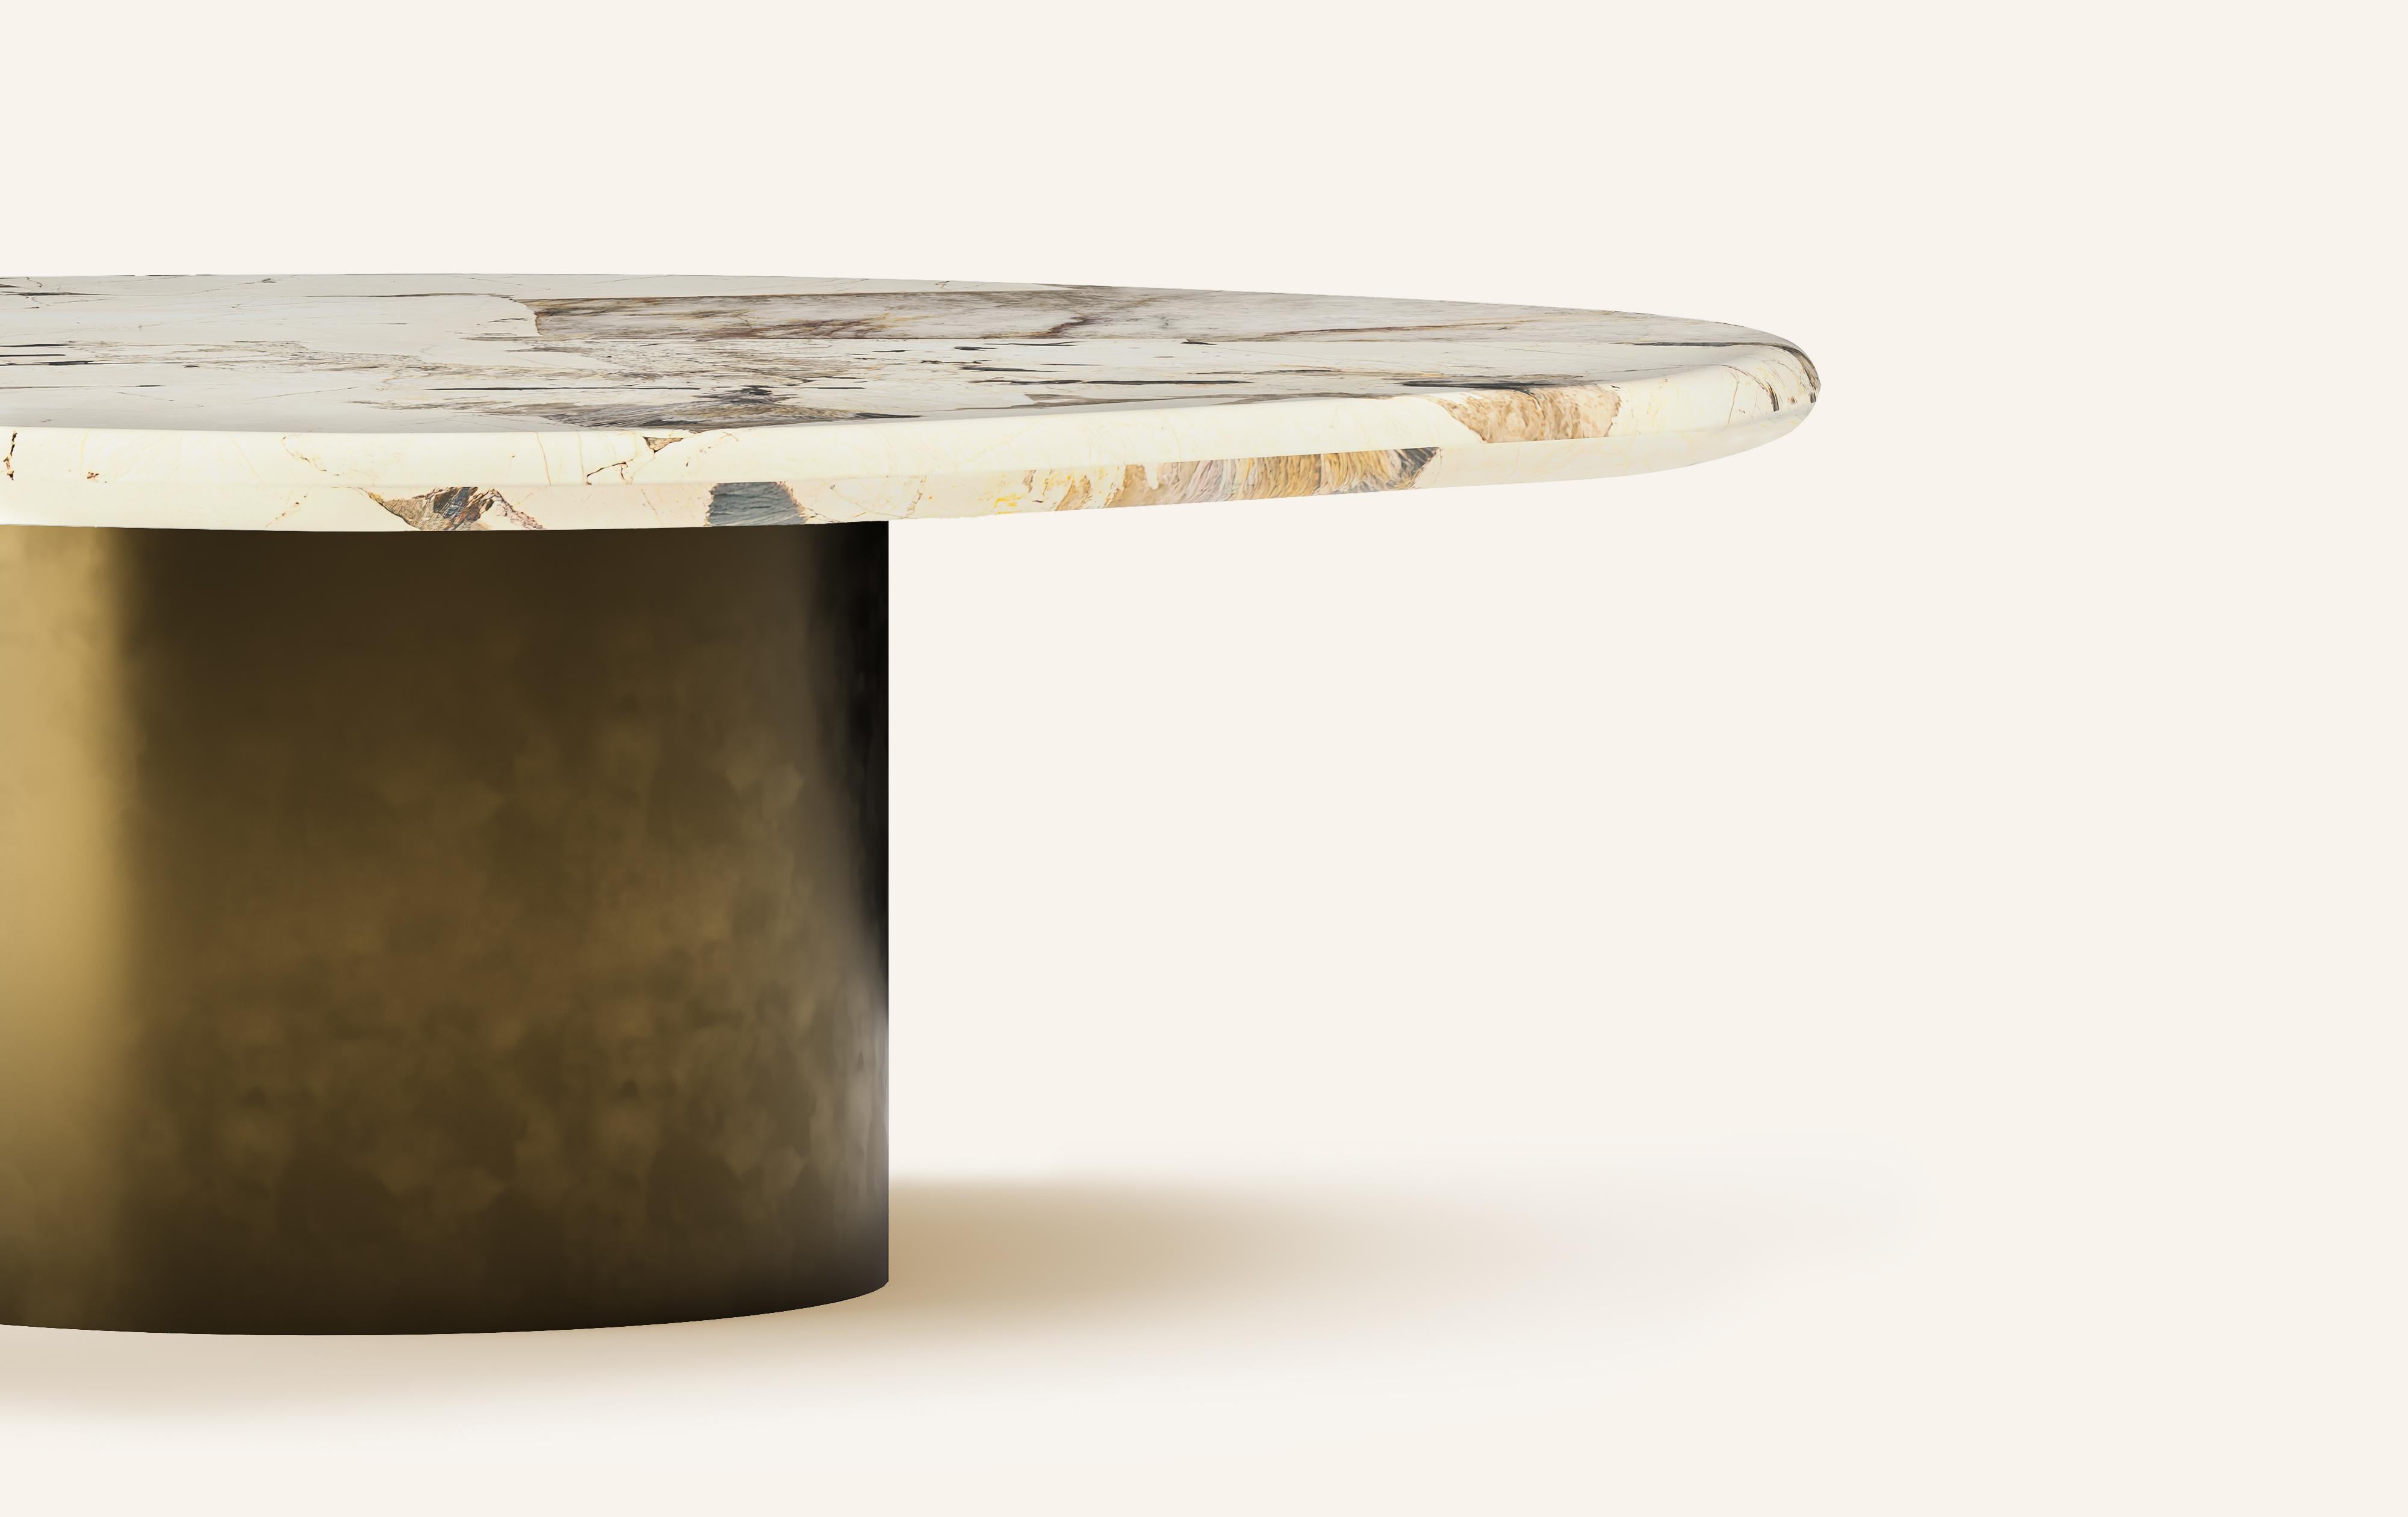 Organic Modern FORM(LA) Lago Round Coffee Table 48”L x 48”W x 14”H Quartzite & Antique Bronze For Sale